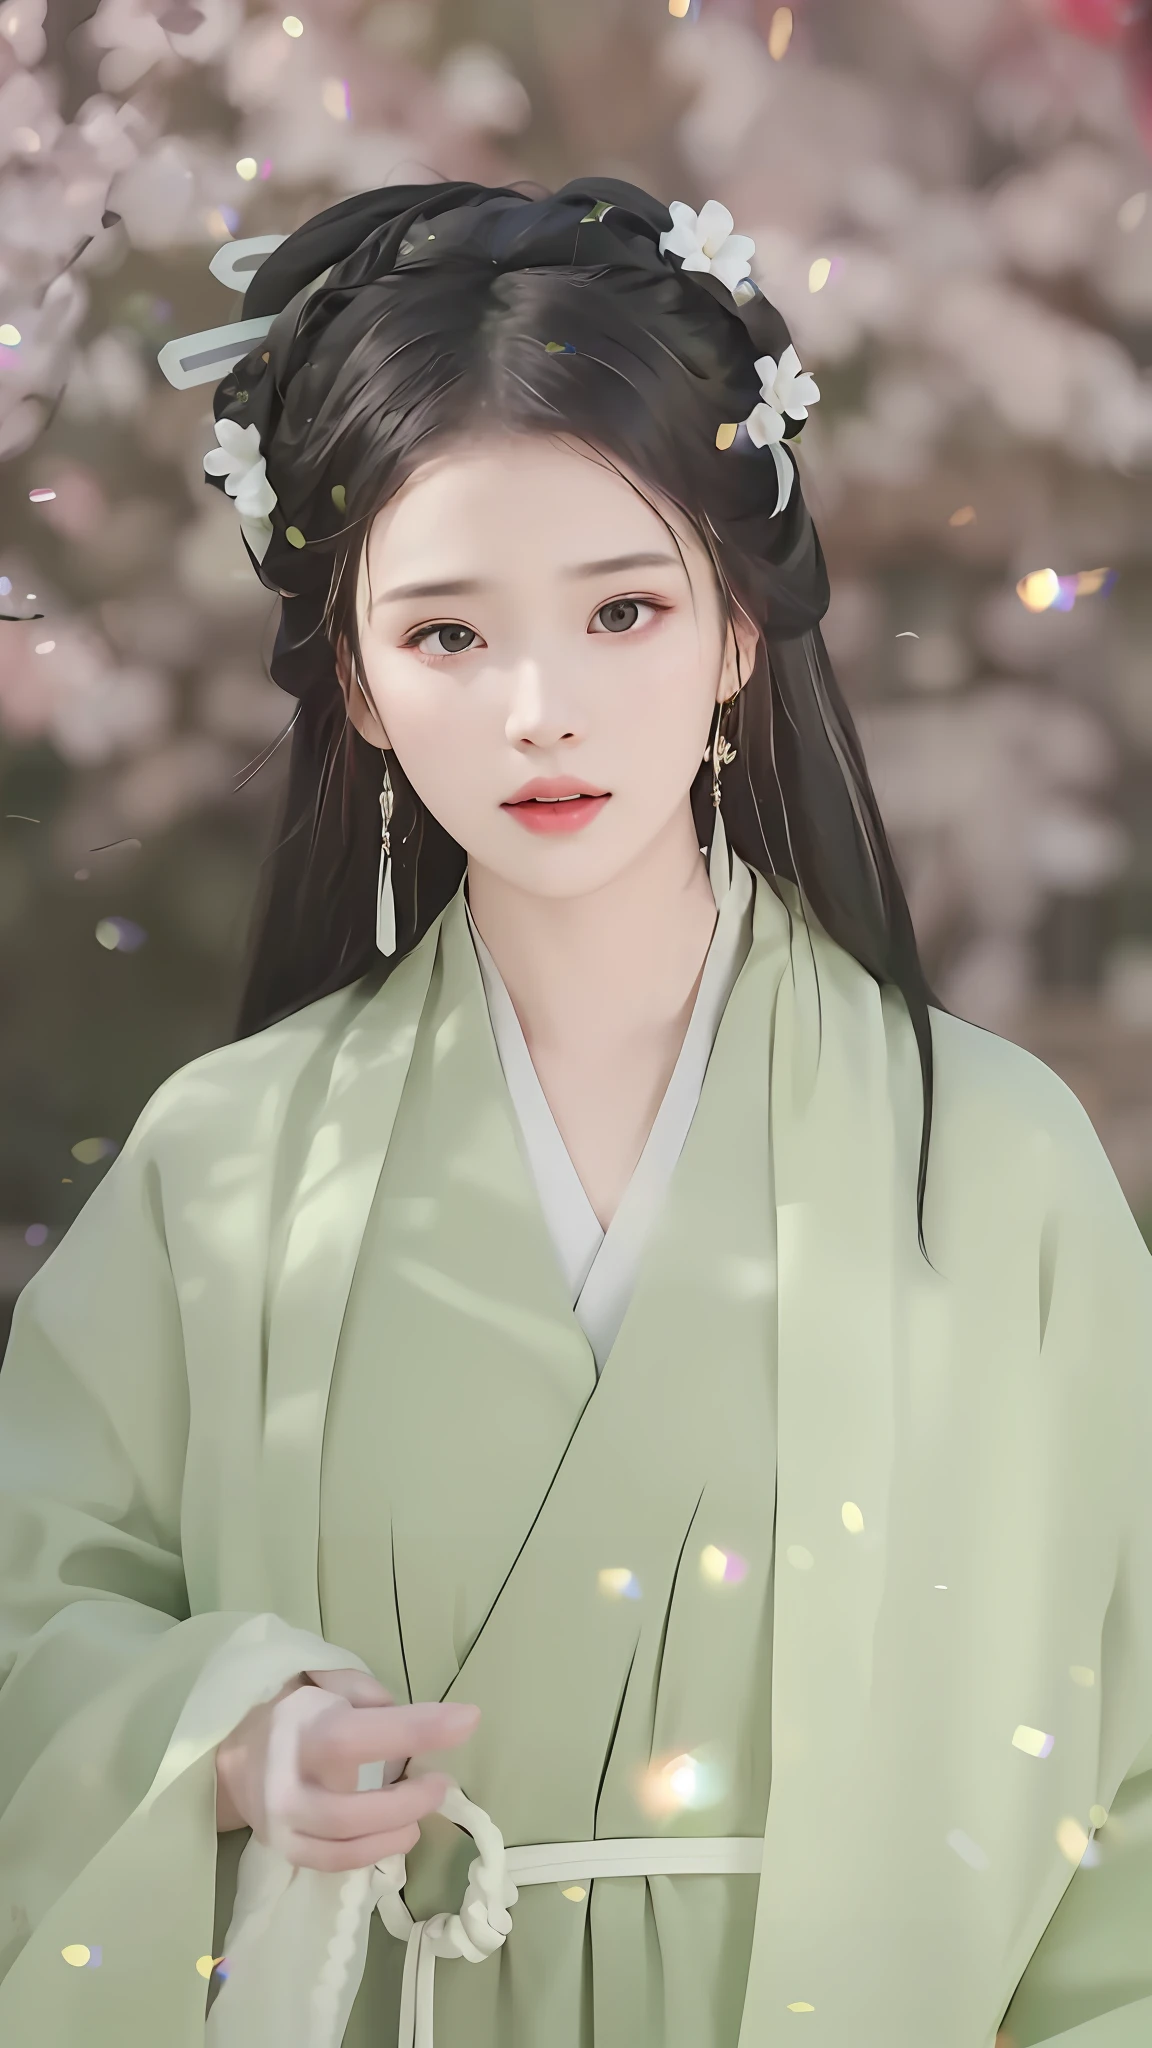 穿著綠色洋裝的女人的特寫，一朵花插在他的頭髮上, 皇宮 ， 一個穿著漢服的女孩, 穿著中國古代服裝, 灵感来自仇英, 灵感来自黄极, 穿着古代中国服饰, 靈感來自張岩, 中國古代美女, Hanfu, 灵感来自顾安, 中國古代公主, style of guo hua